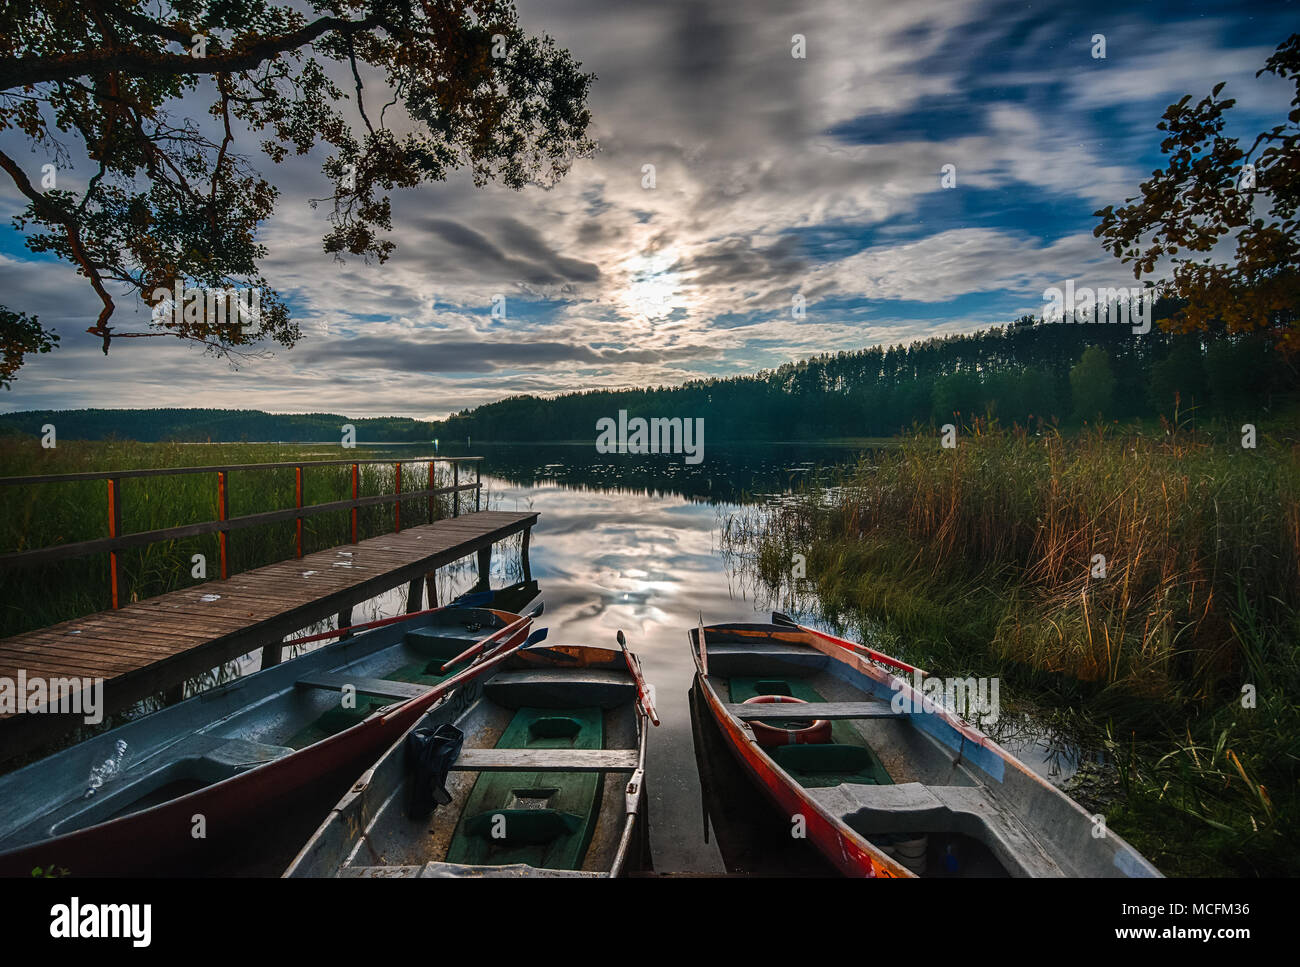 Dock in barca sul lago, albero riflessioni in acqua calma Foto Stock